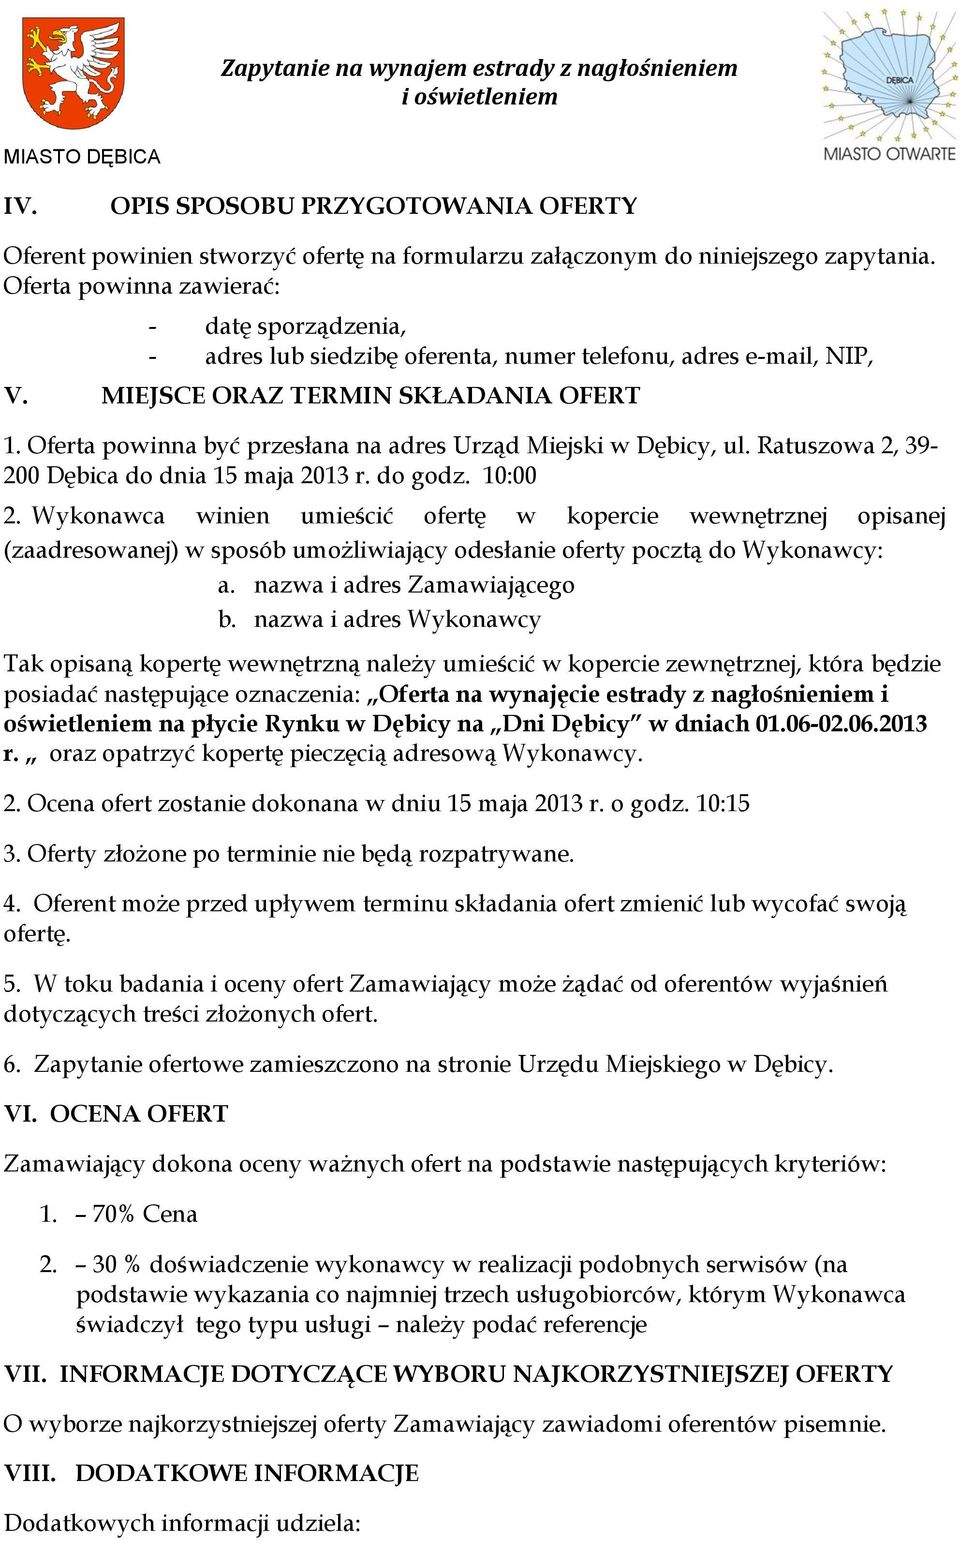 Oferta powinna być przesłana na adres Urząd Miejski w Dębicy, ul. Ratuszowa 2, 39-200 Dębica do dnia 15 maja 2013 r. do godz. 10:00 2.